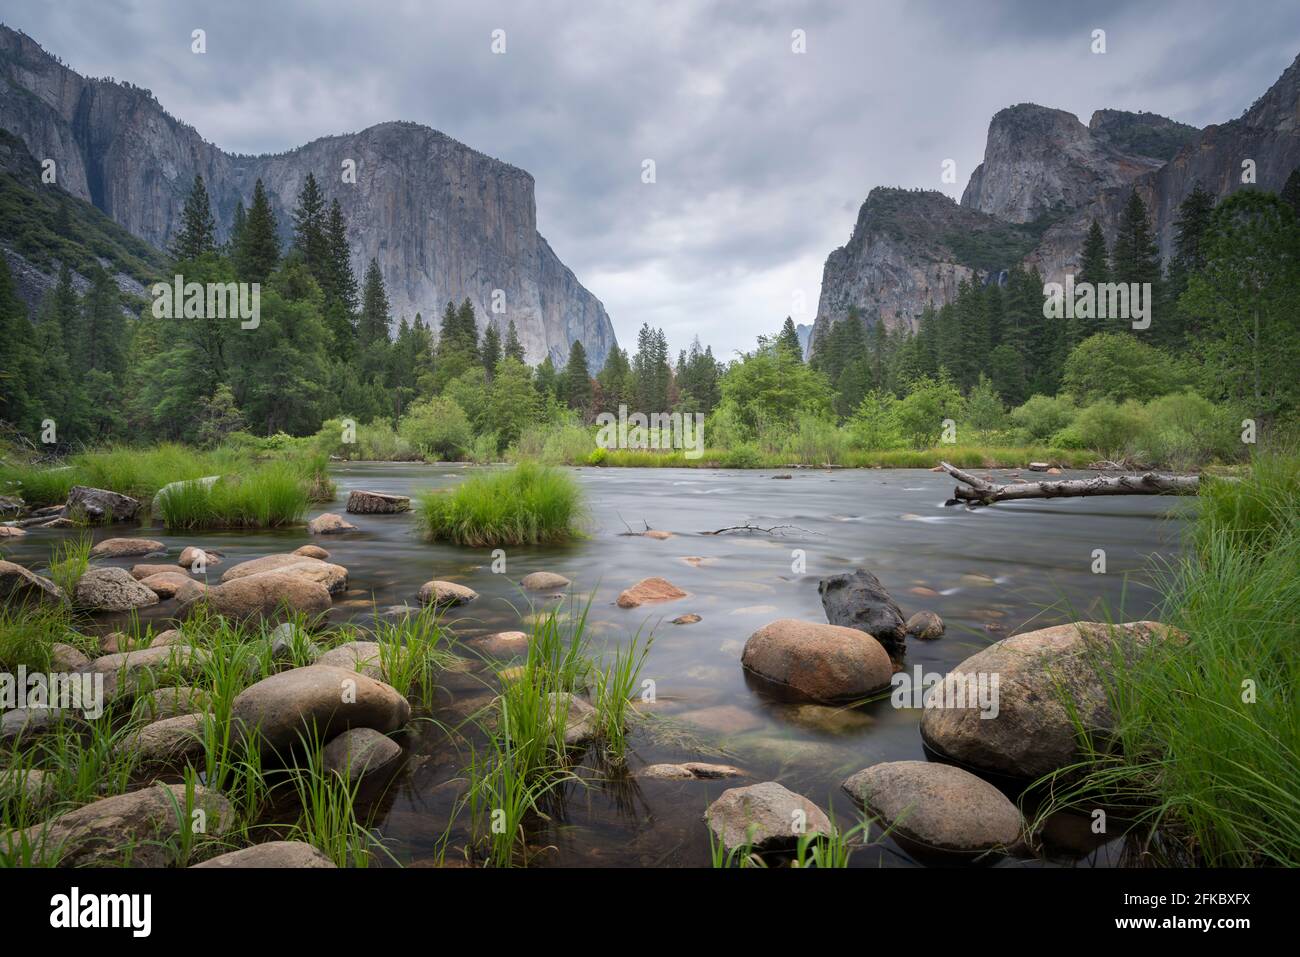 La Merced River at Valley View au printemps, parc national de Yosemite, site classé au patrimoine mondial de l'UNESCO, Californie, États-Unis d'Amérique, Amérique du Nord Banque D'Images